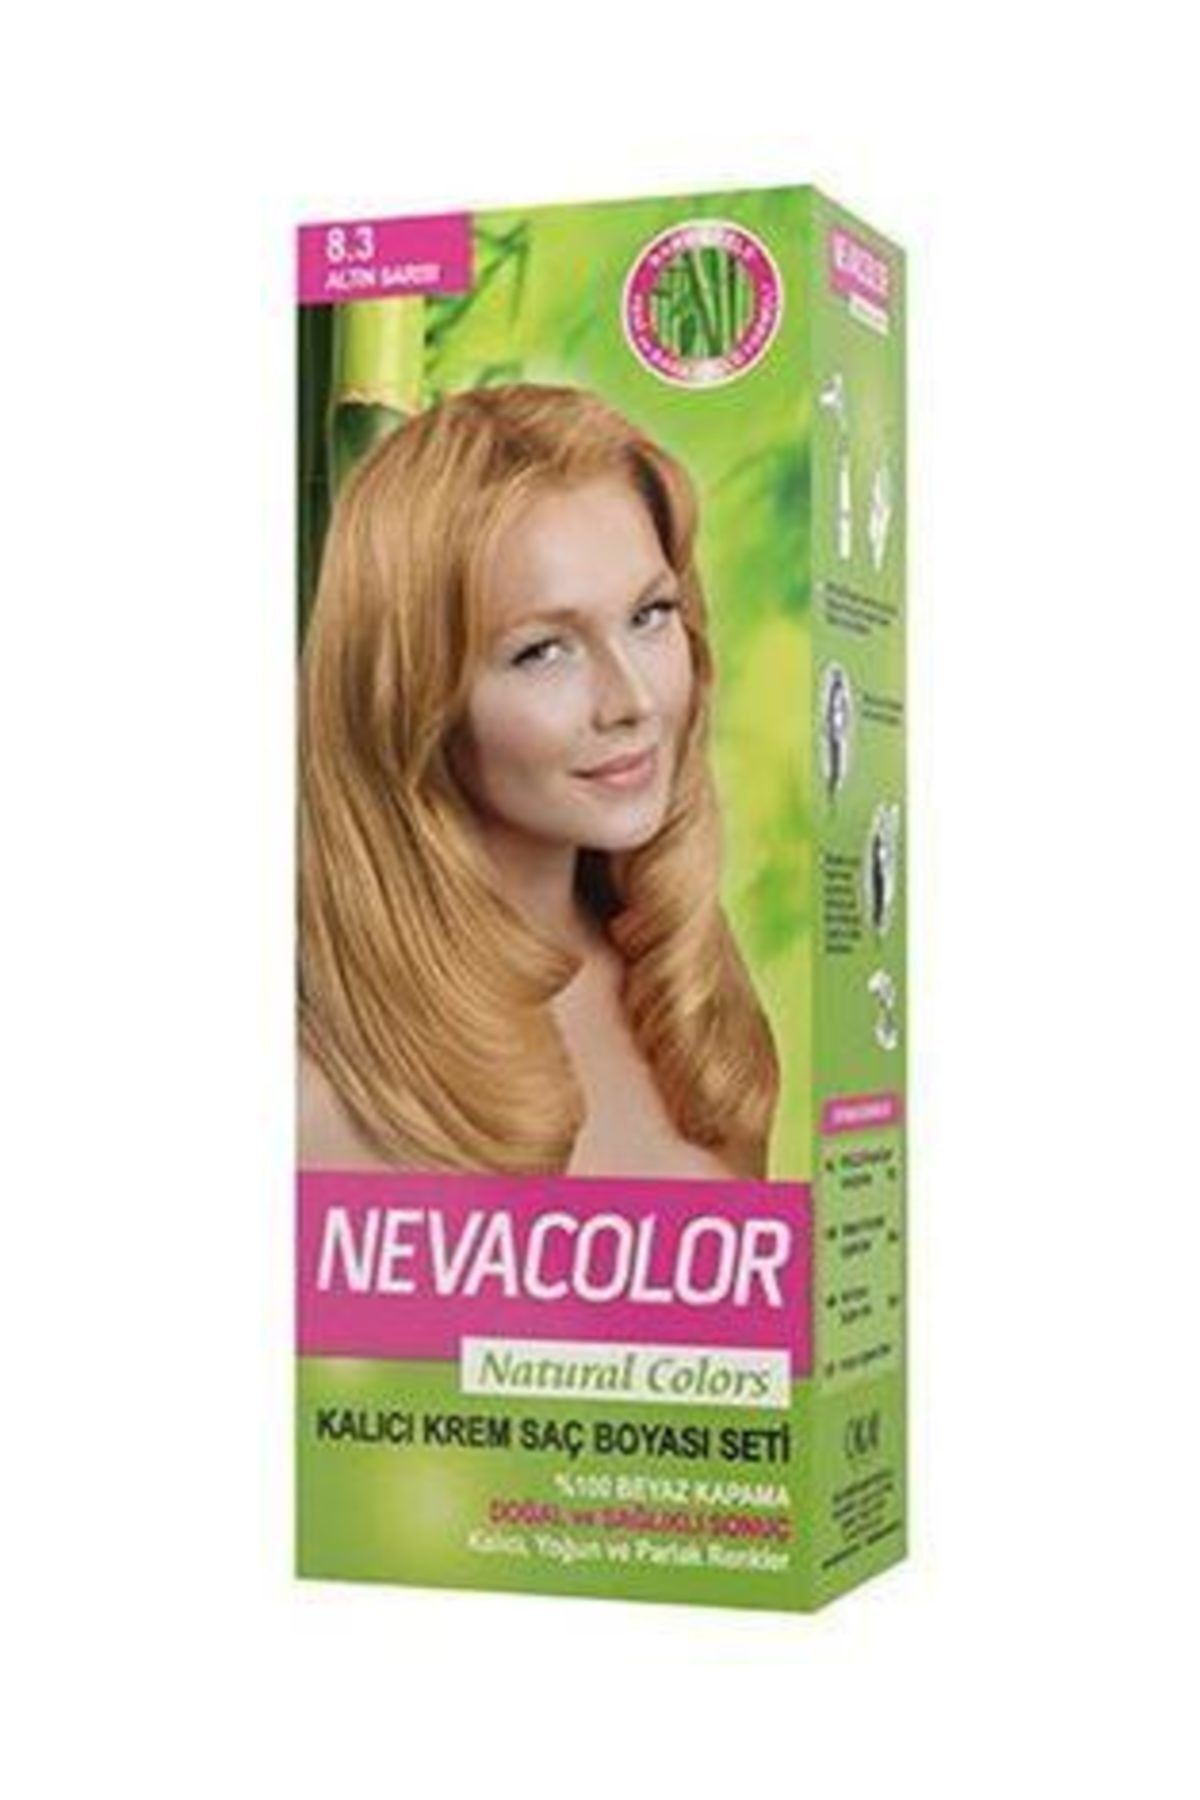 Neva Color Natural Colors Kalıcı Saç Boya Seti 8.3 Altın Sarı